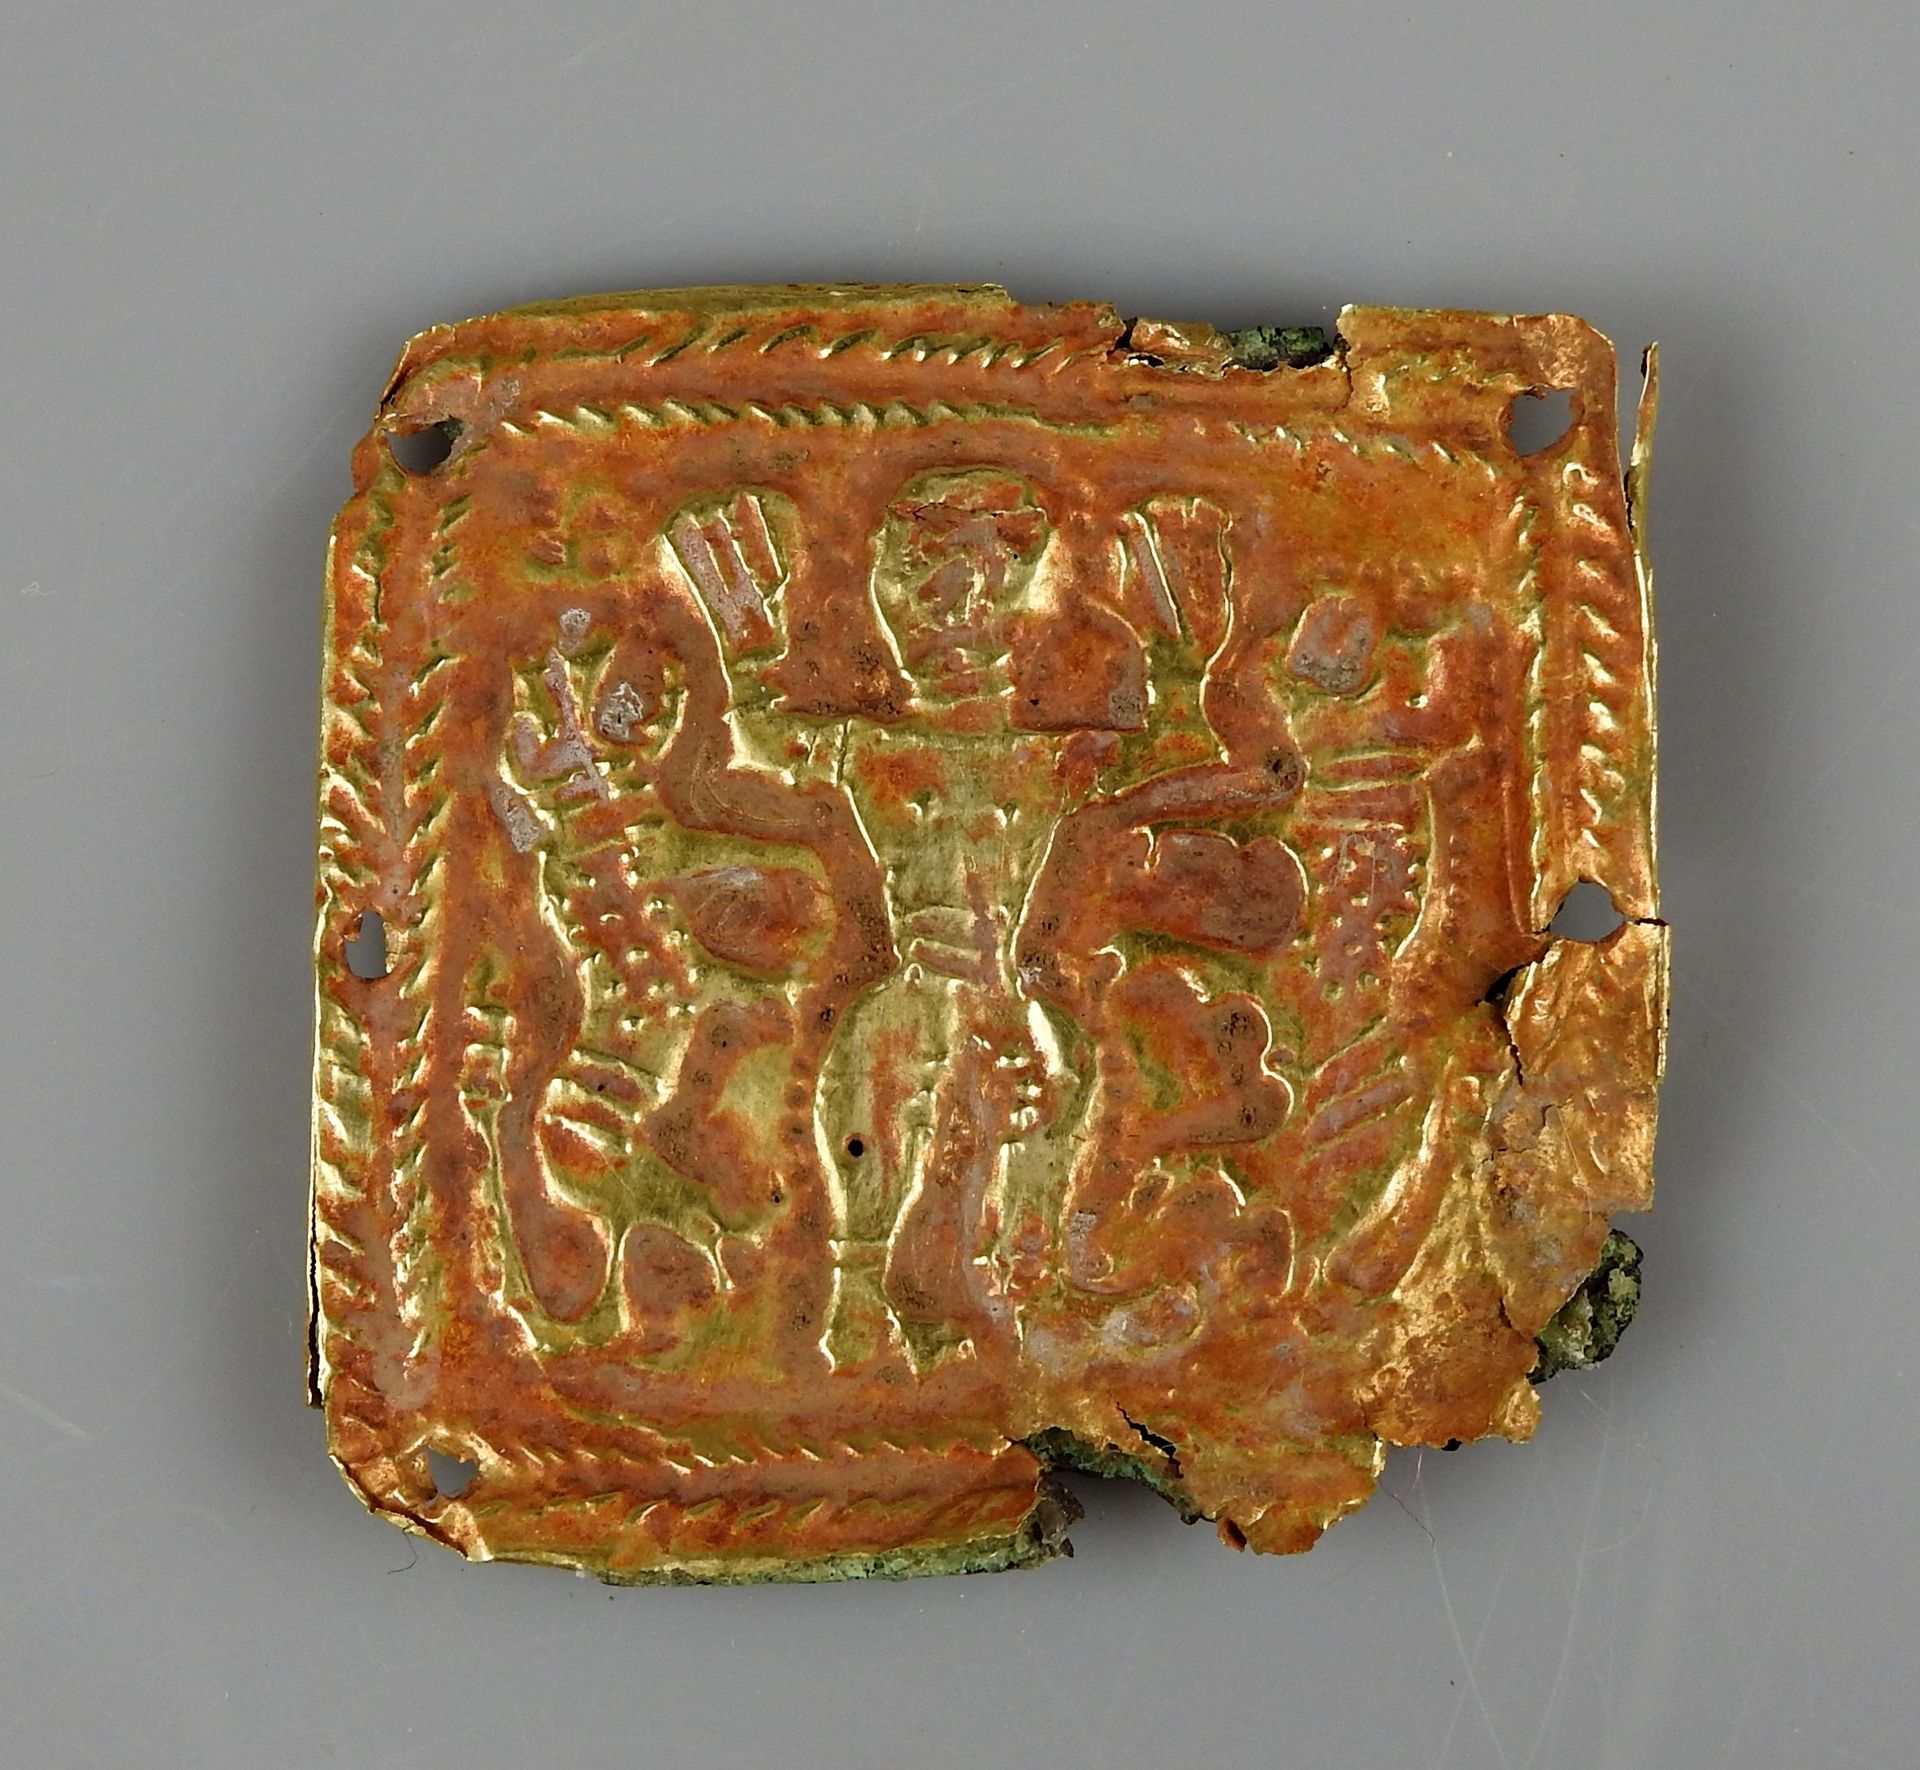 Null 代表动物大师的美丽盘子，被狮子包围着

金和青铜3.8厘米

伊朗，Marlik文化，公元前一千年